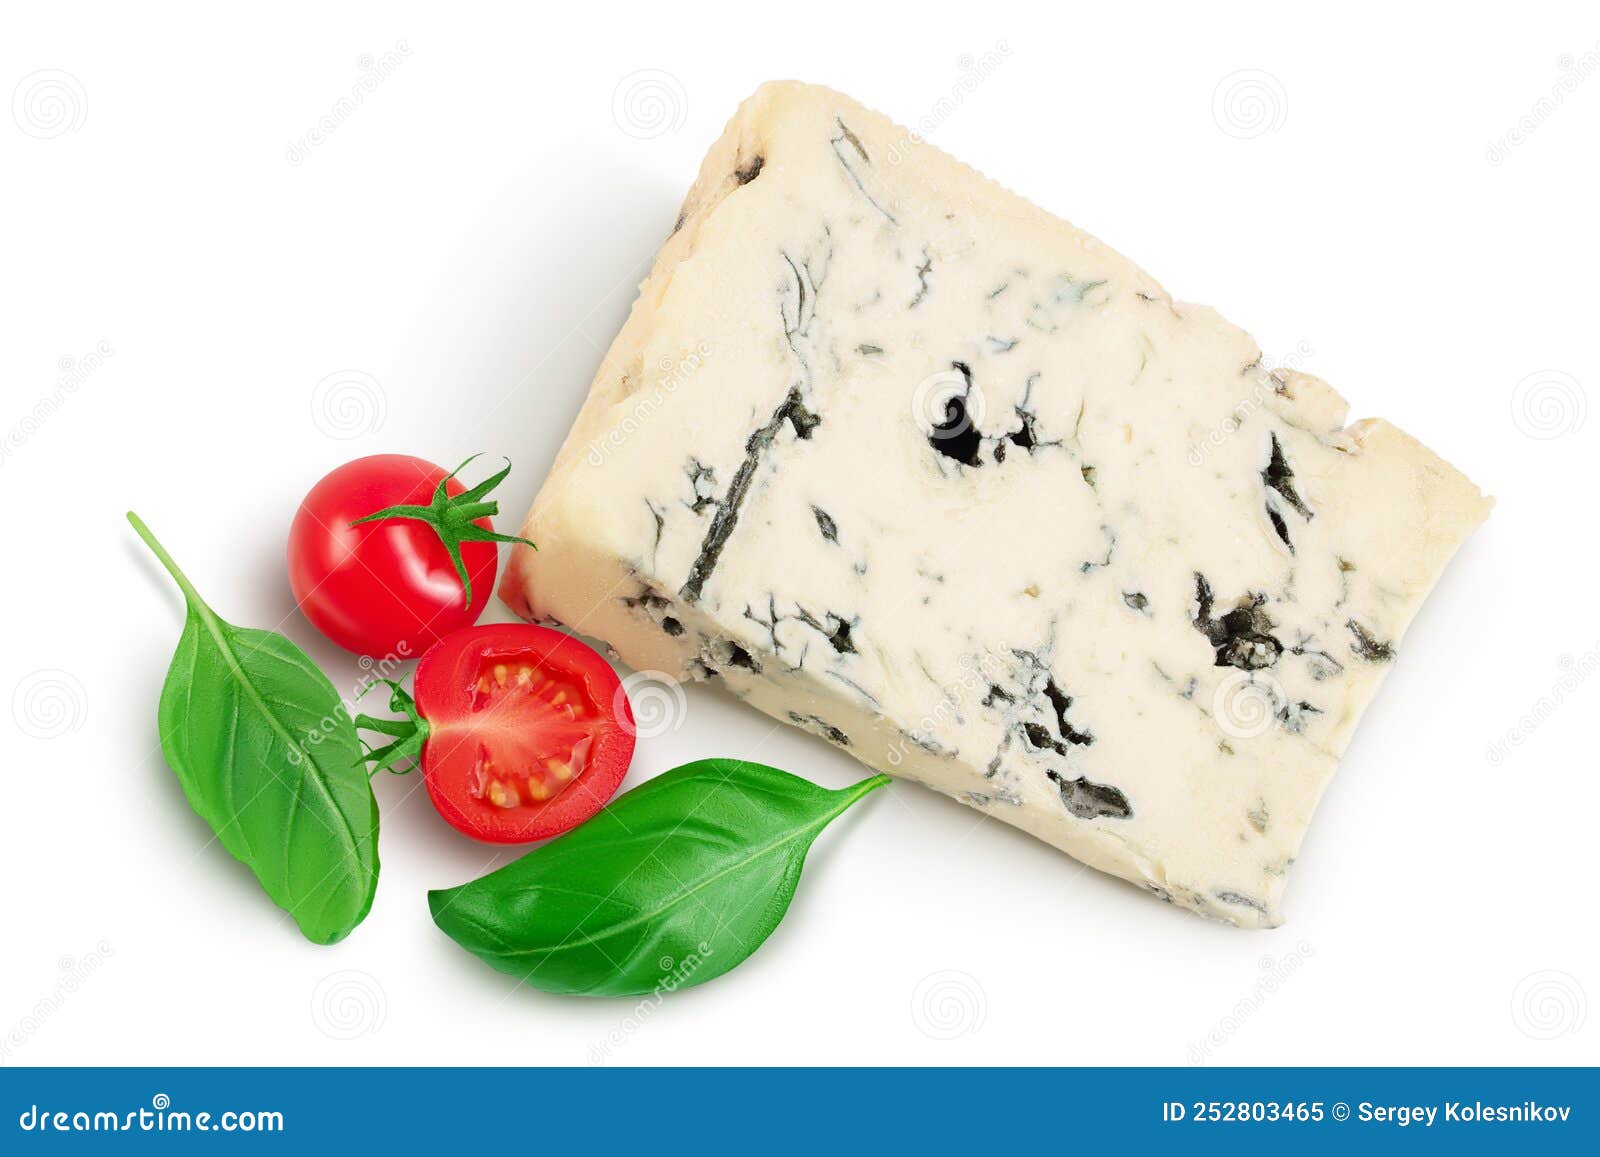 蓝纹奶酪的细节高清摄影大图-千库网